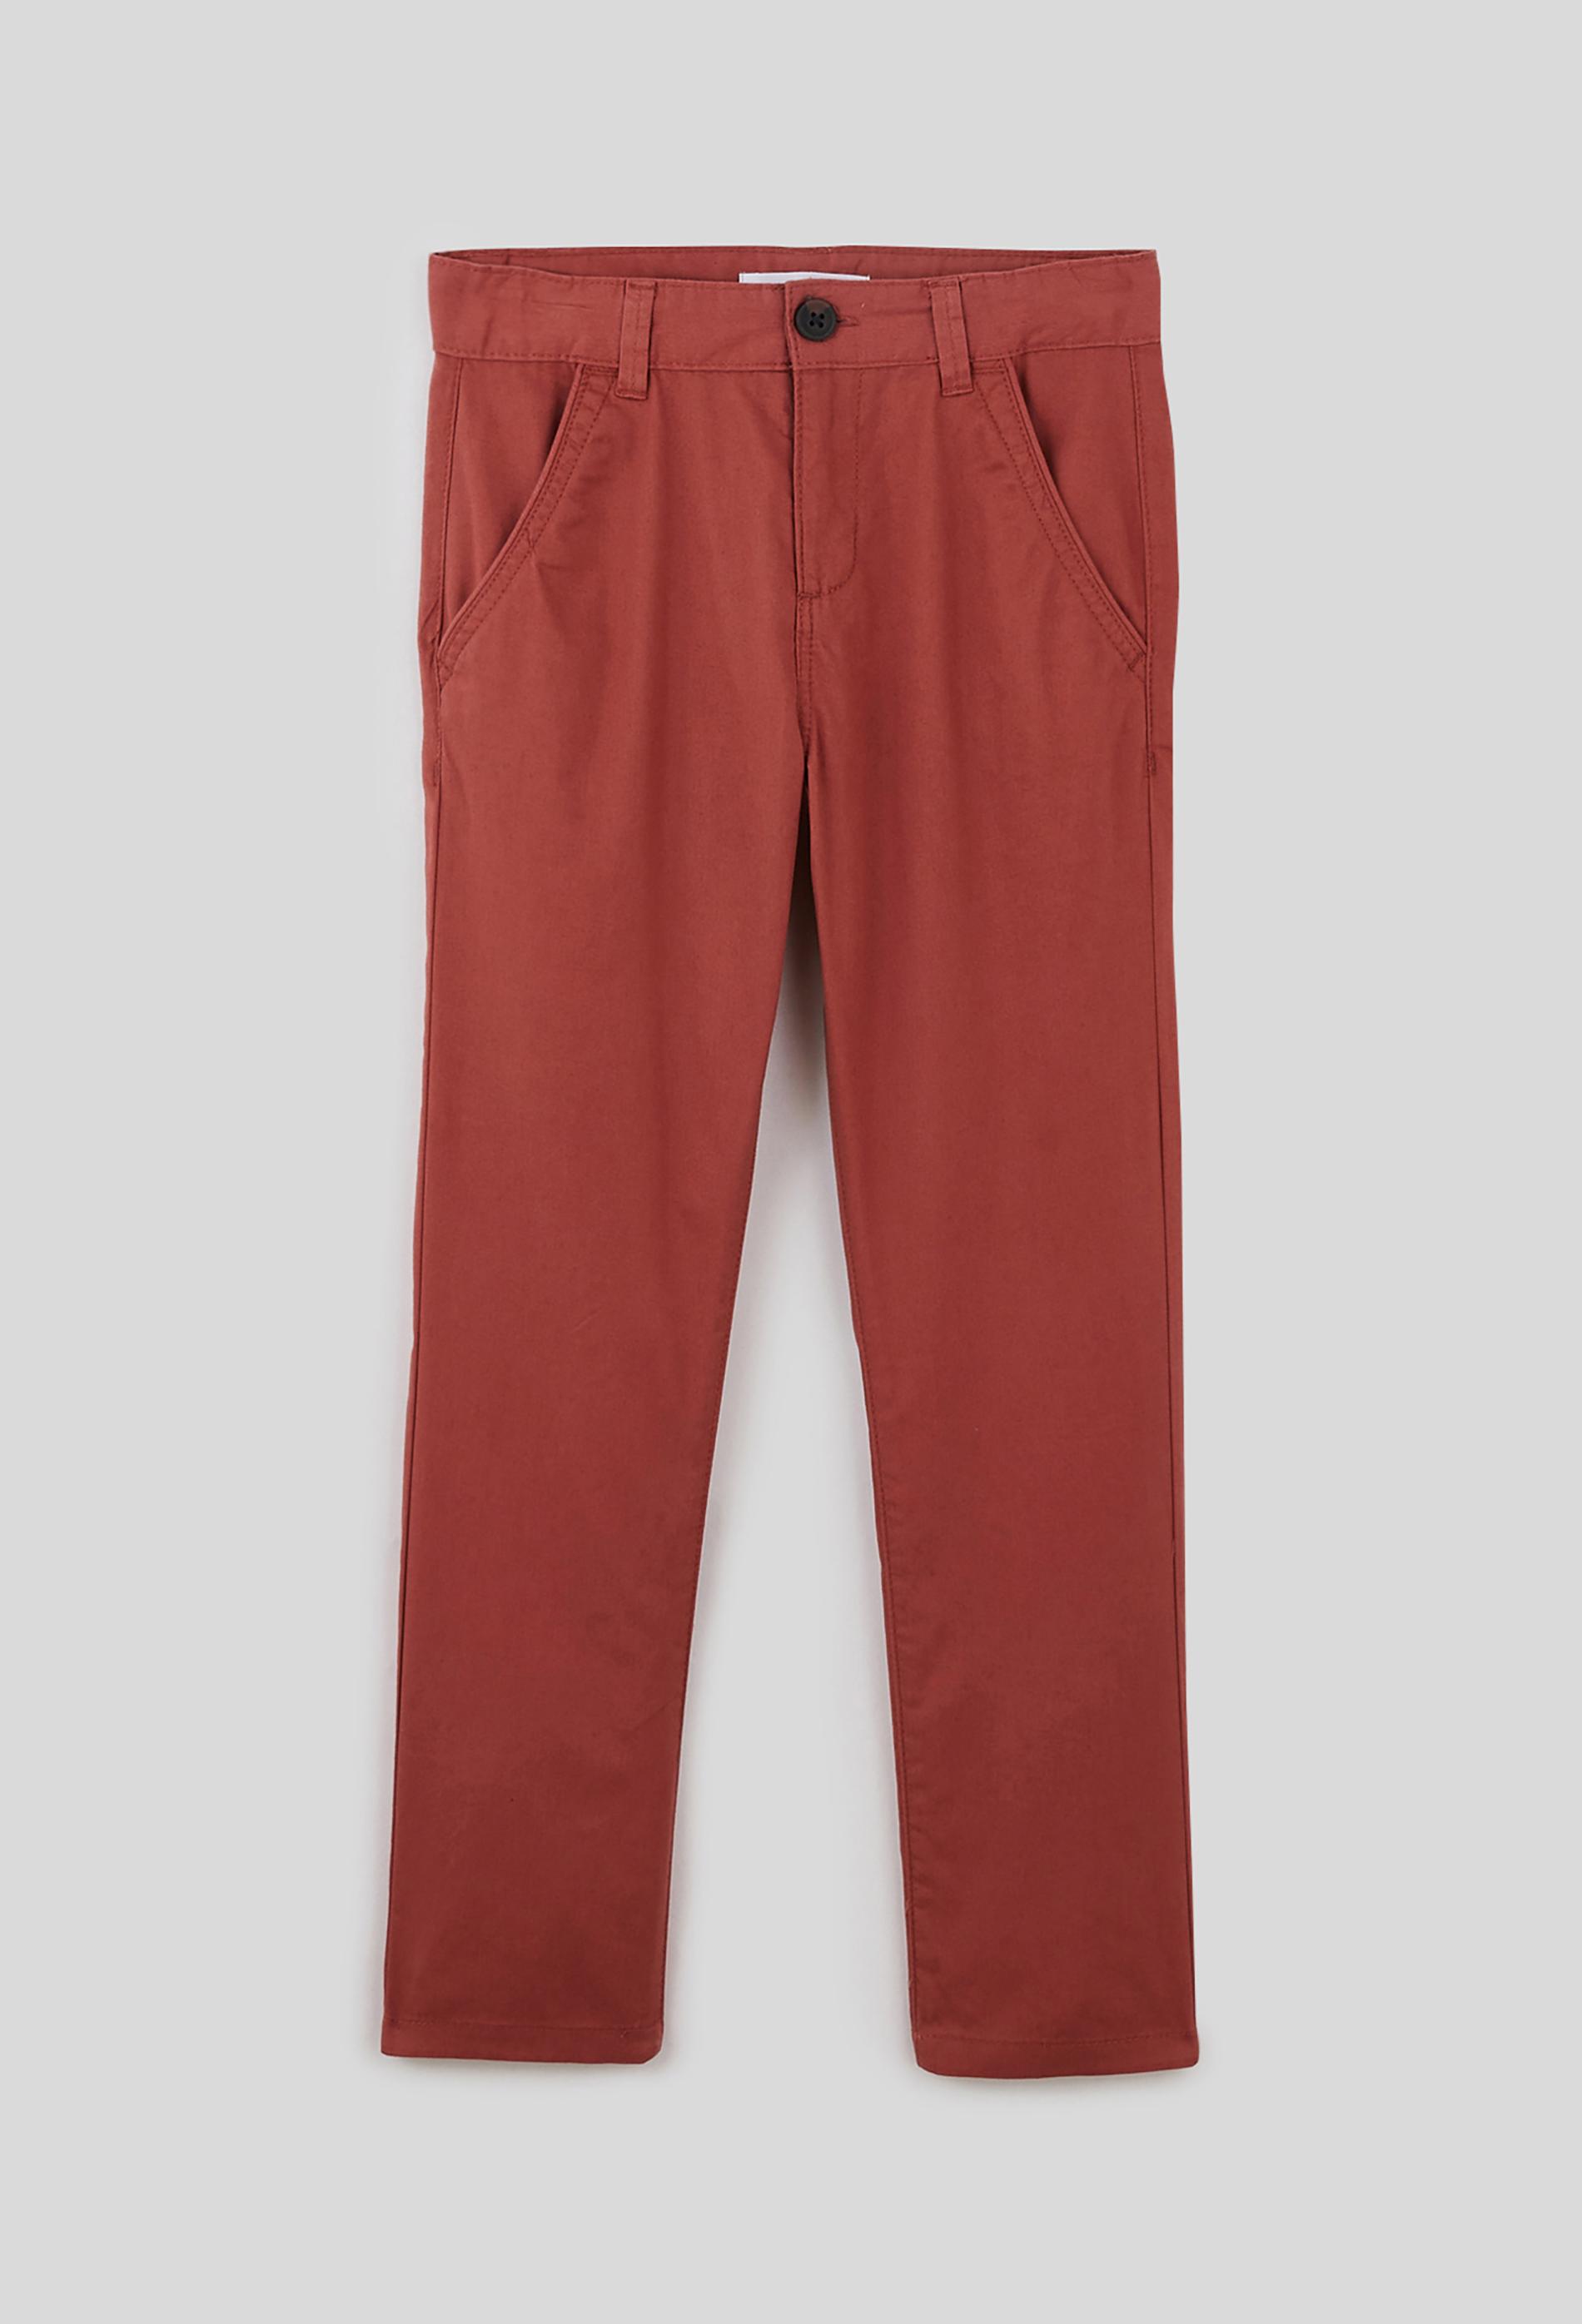 Pantalon léger en coton BIO 14 ans rouge